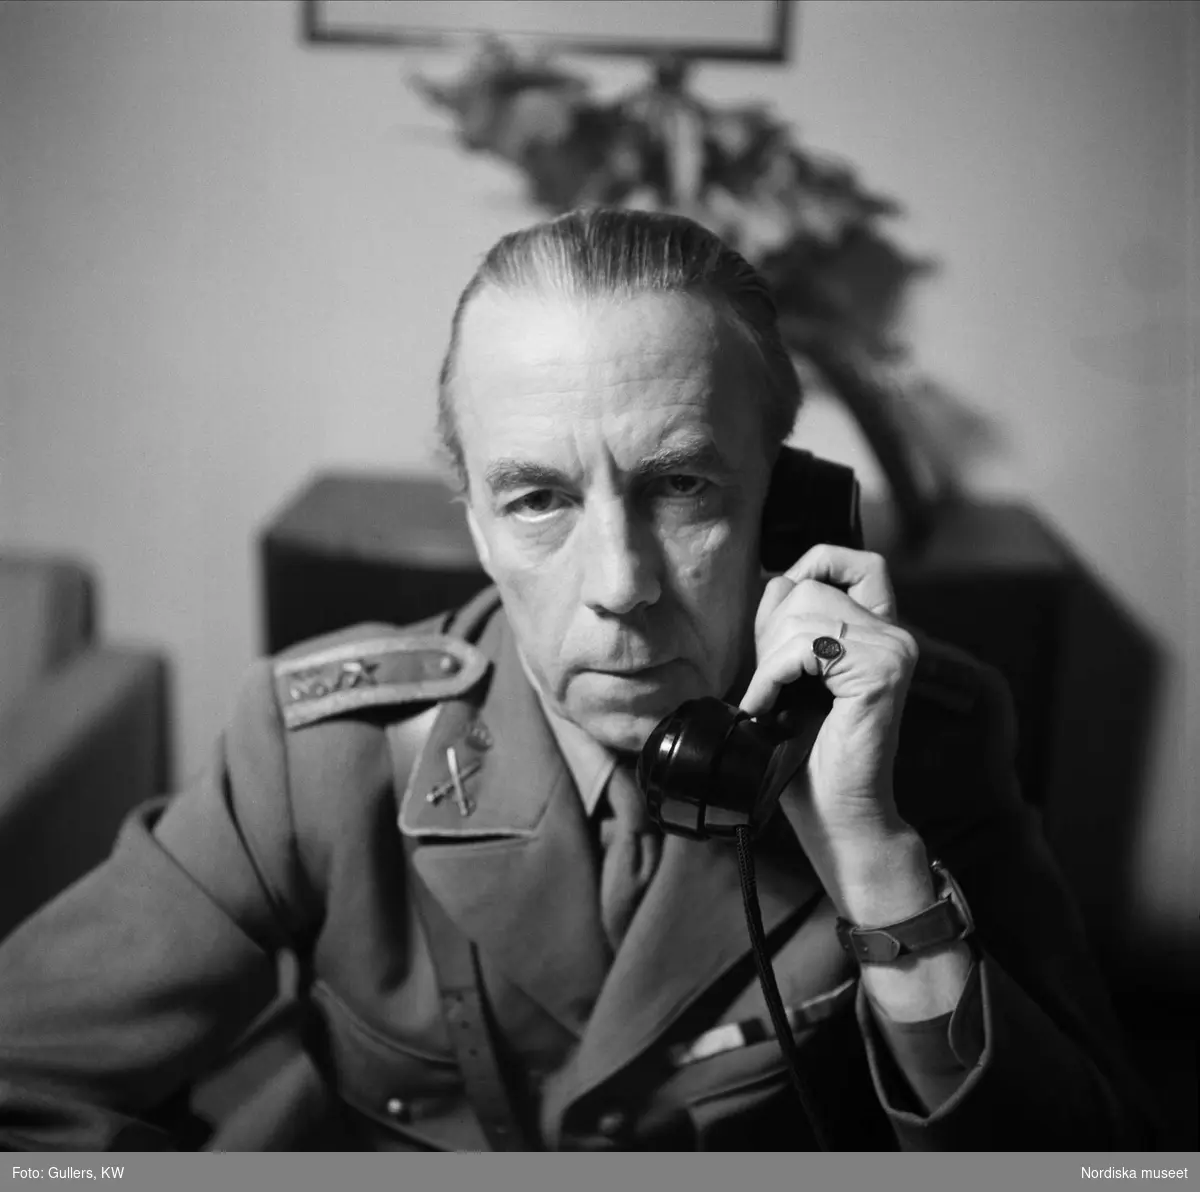 Greve Folke Bernadotte i uniform talar i telefon. Porträtt.